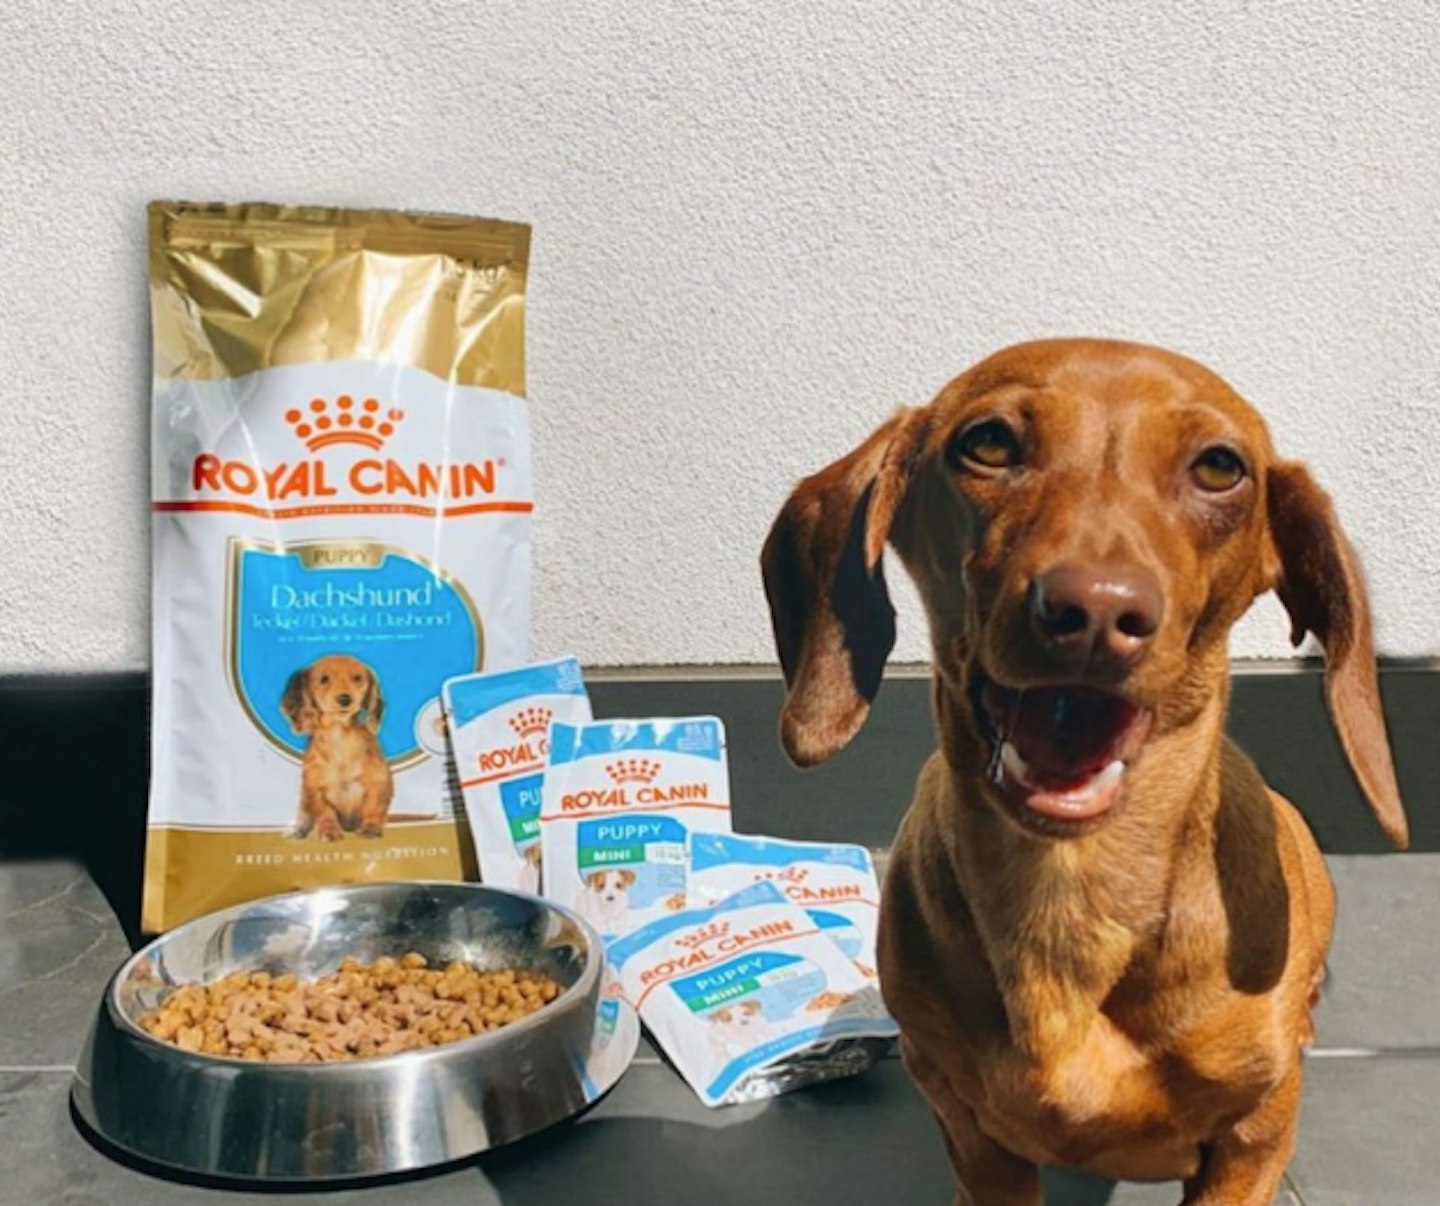 Royal Canin dachshund food 